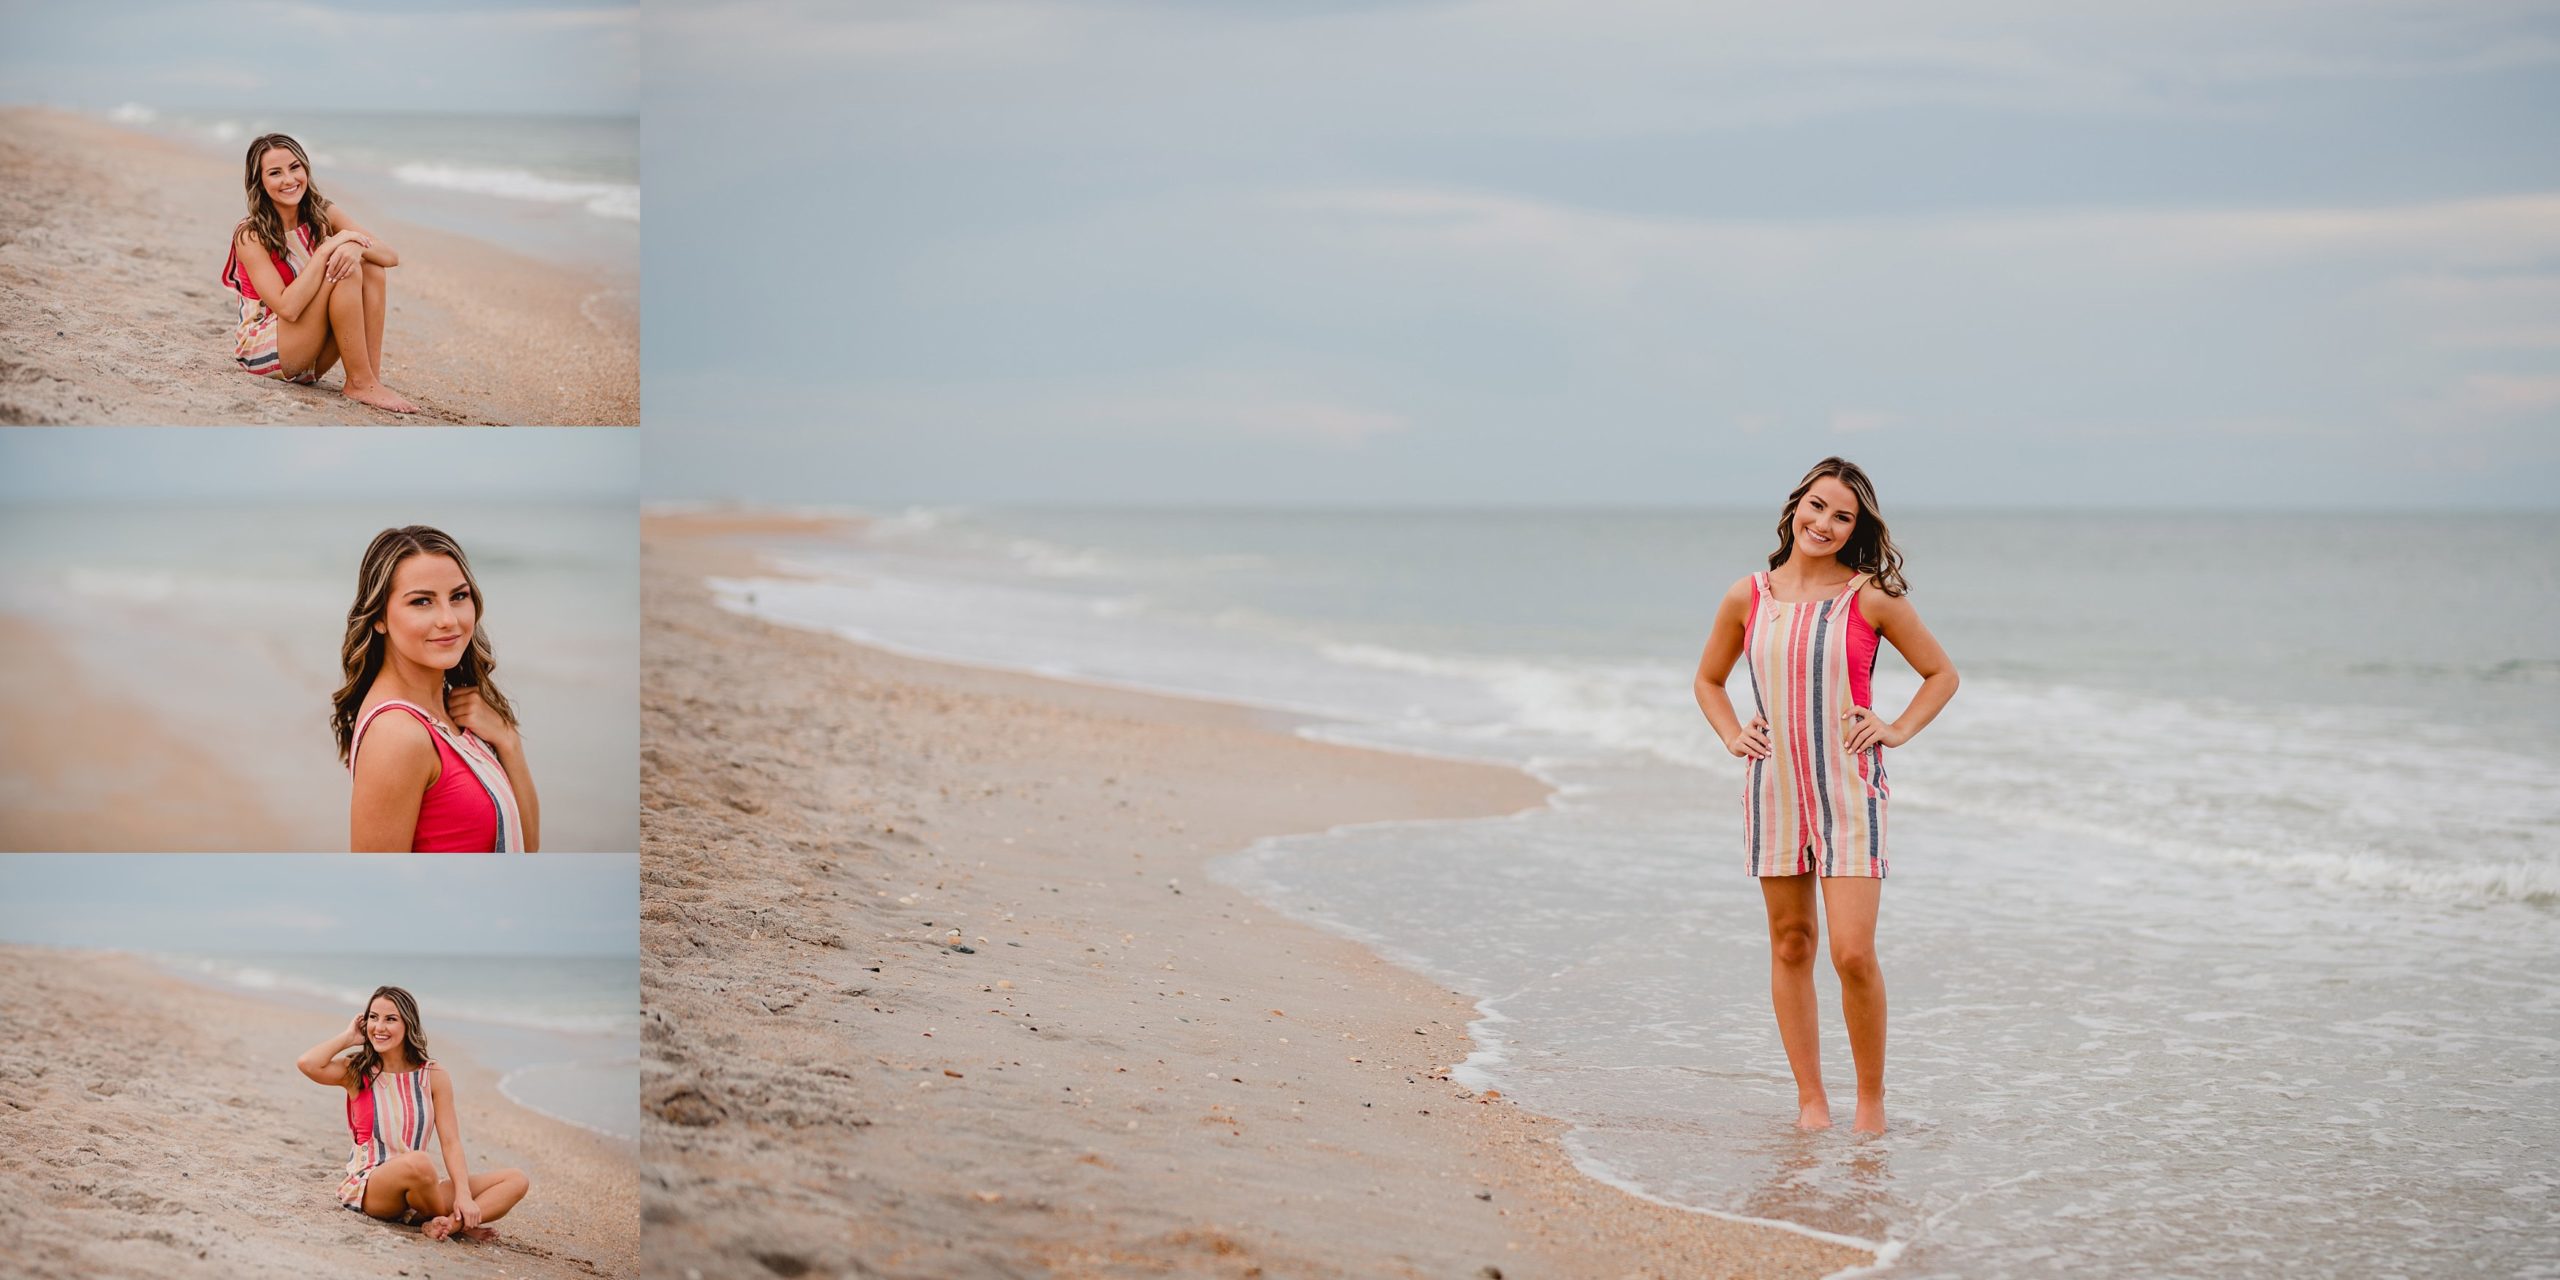 Senior pics taken on the beach in Florida